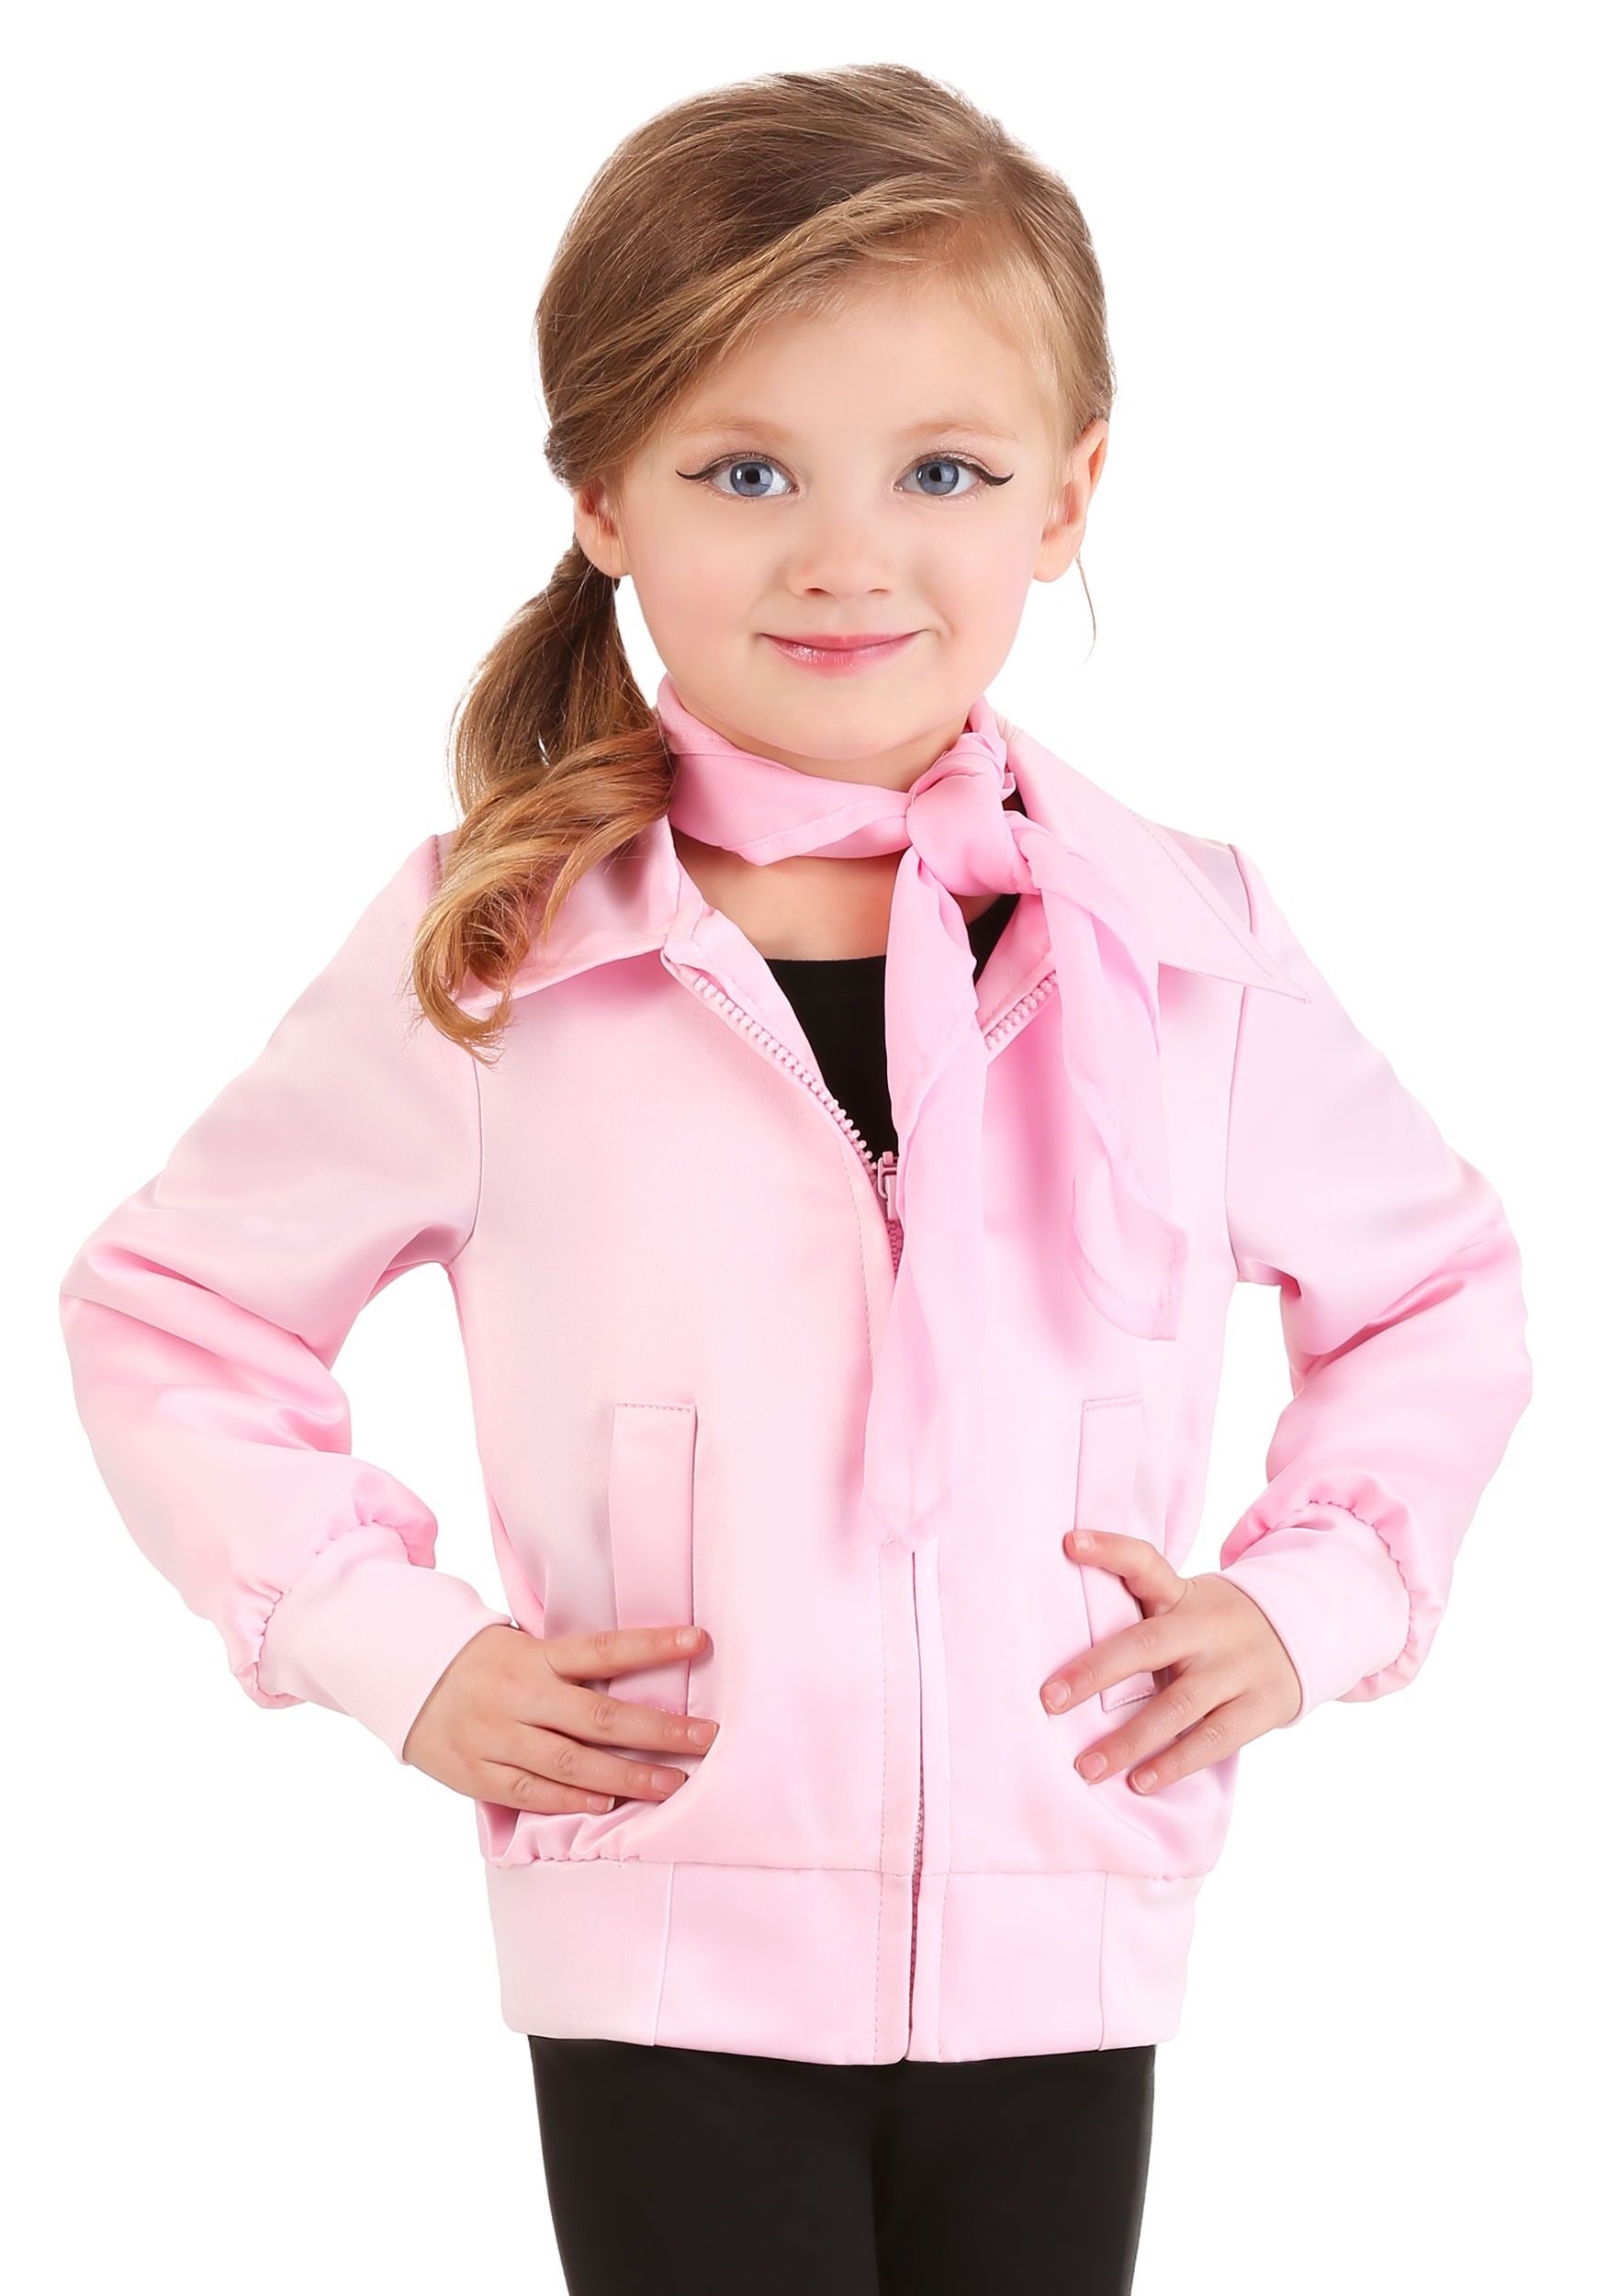 Grease Pink Ladies Toddlers Costume Jacket